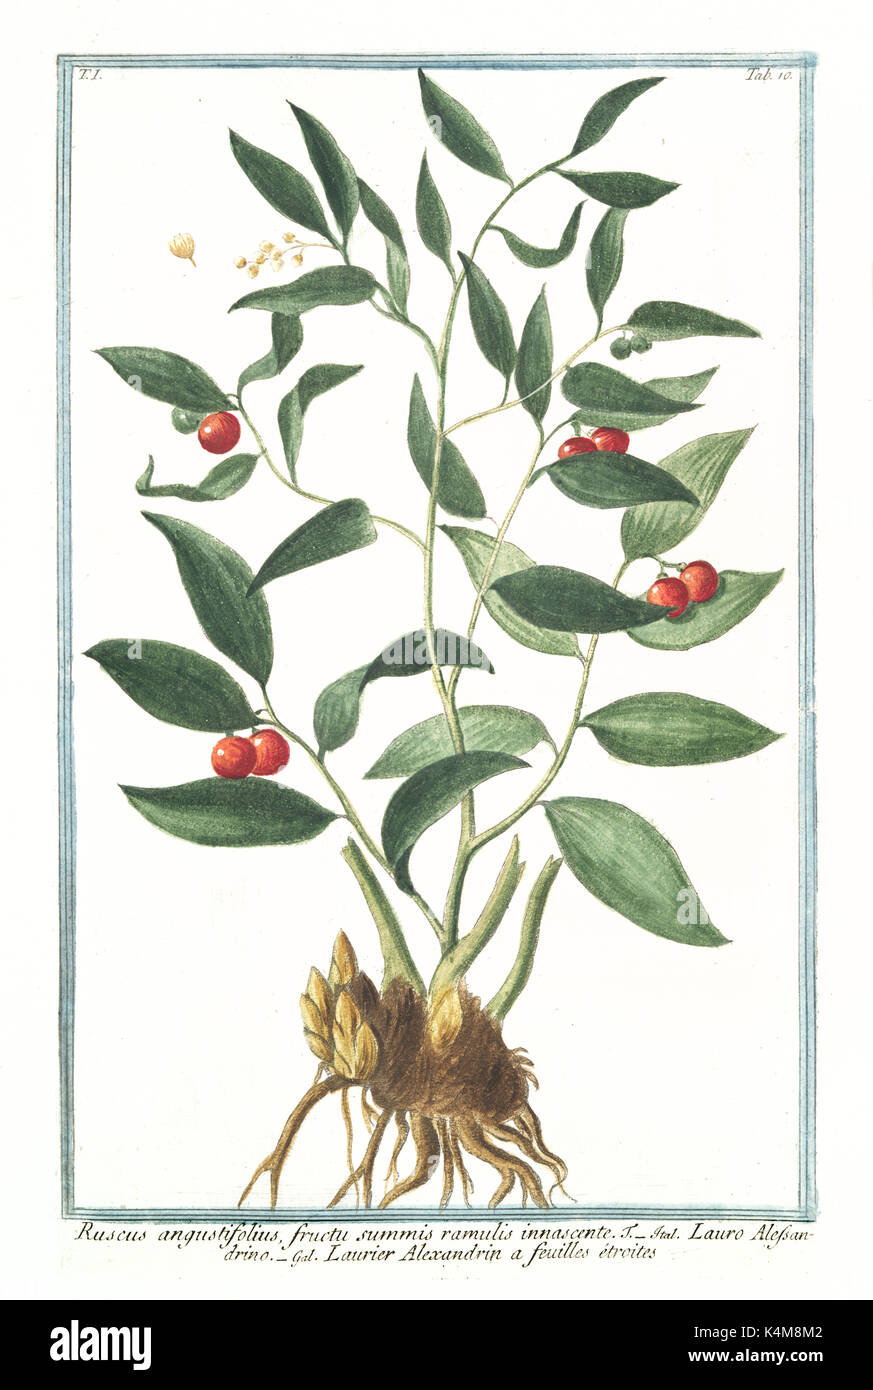 Old illustration of Ruscus angustitifolius fructu summis ramuli innascente. By G. Bonelli on Hortus Romanus, publ. N. Martelli, Rome, 1772 – 93 Stock Photo